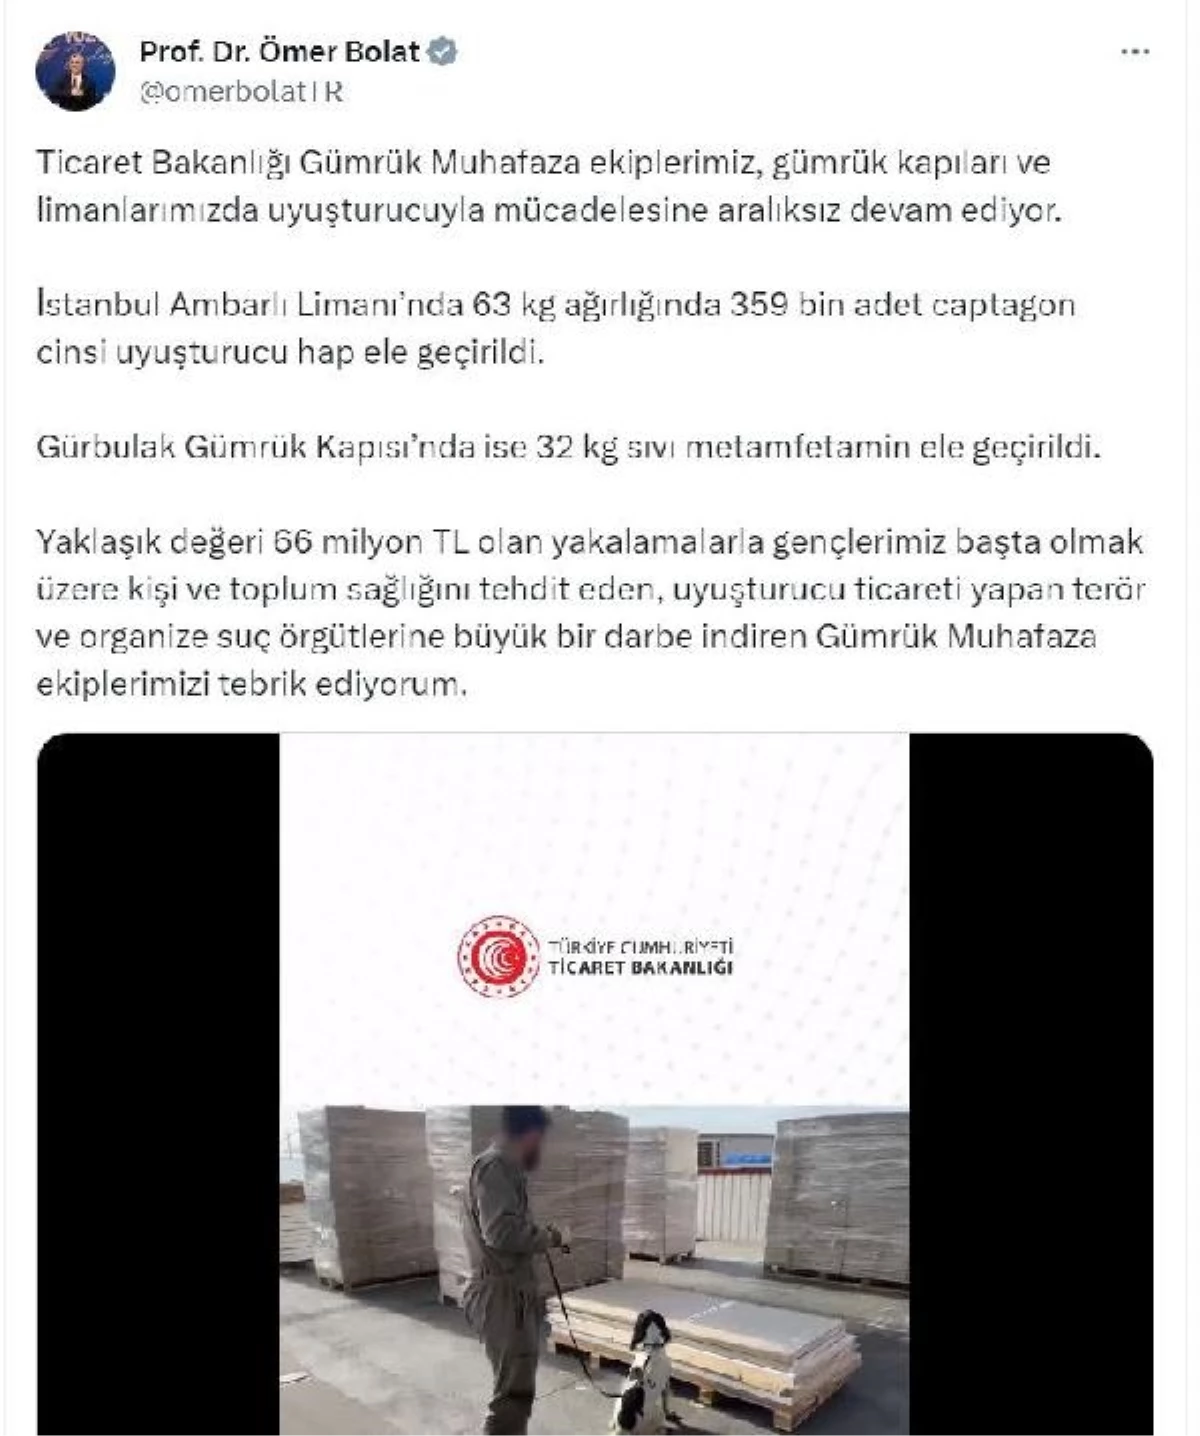 Ticaret Bakanı: İstanbul Ambarlı Limanı ve Gürbulak Gümrük Kapısı\'nda 66 milyon TL değerinde uyuşturucu ele geçirildi